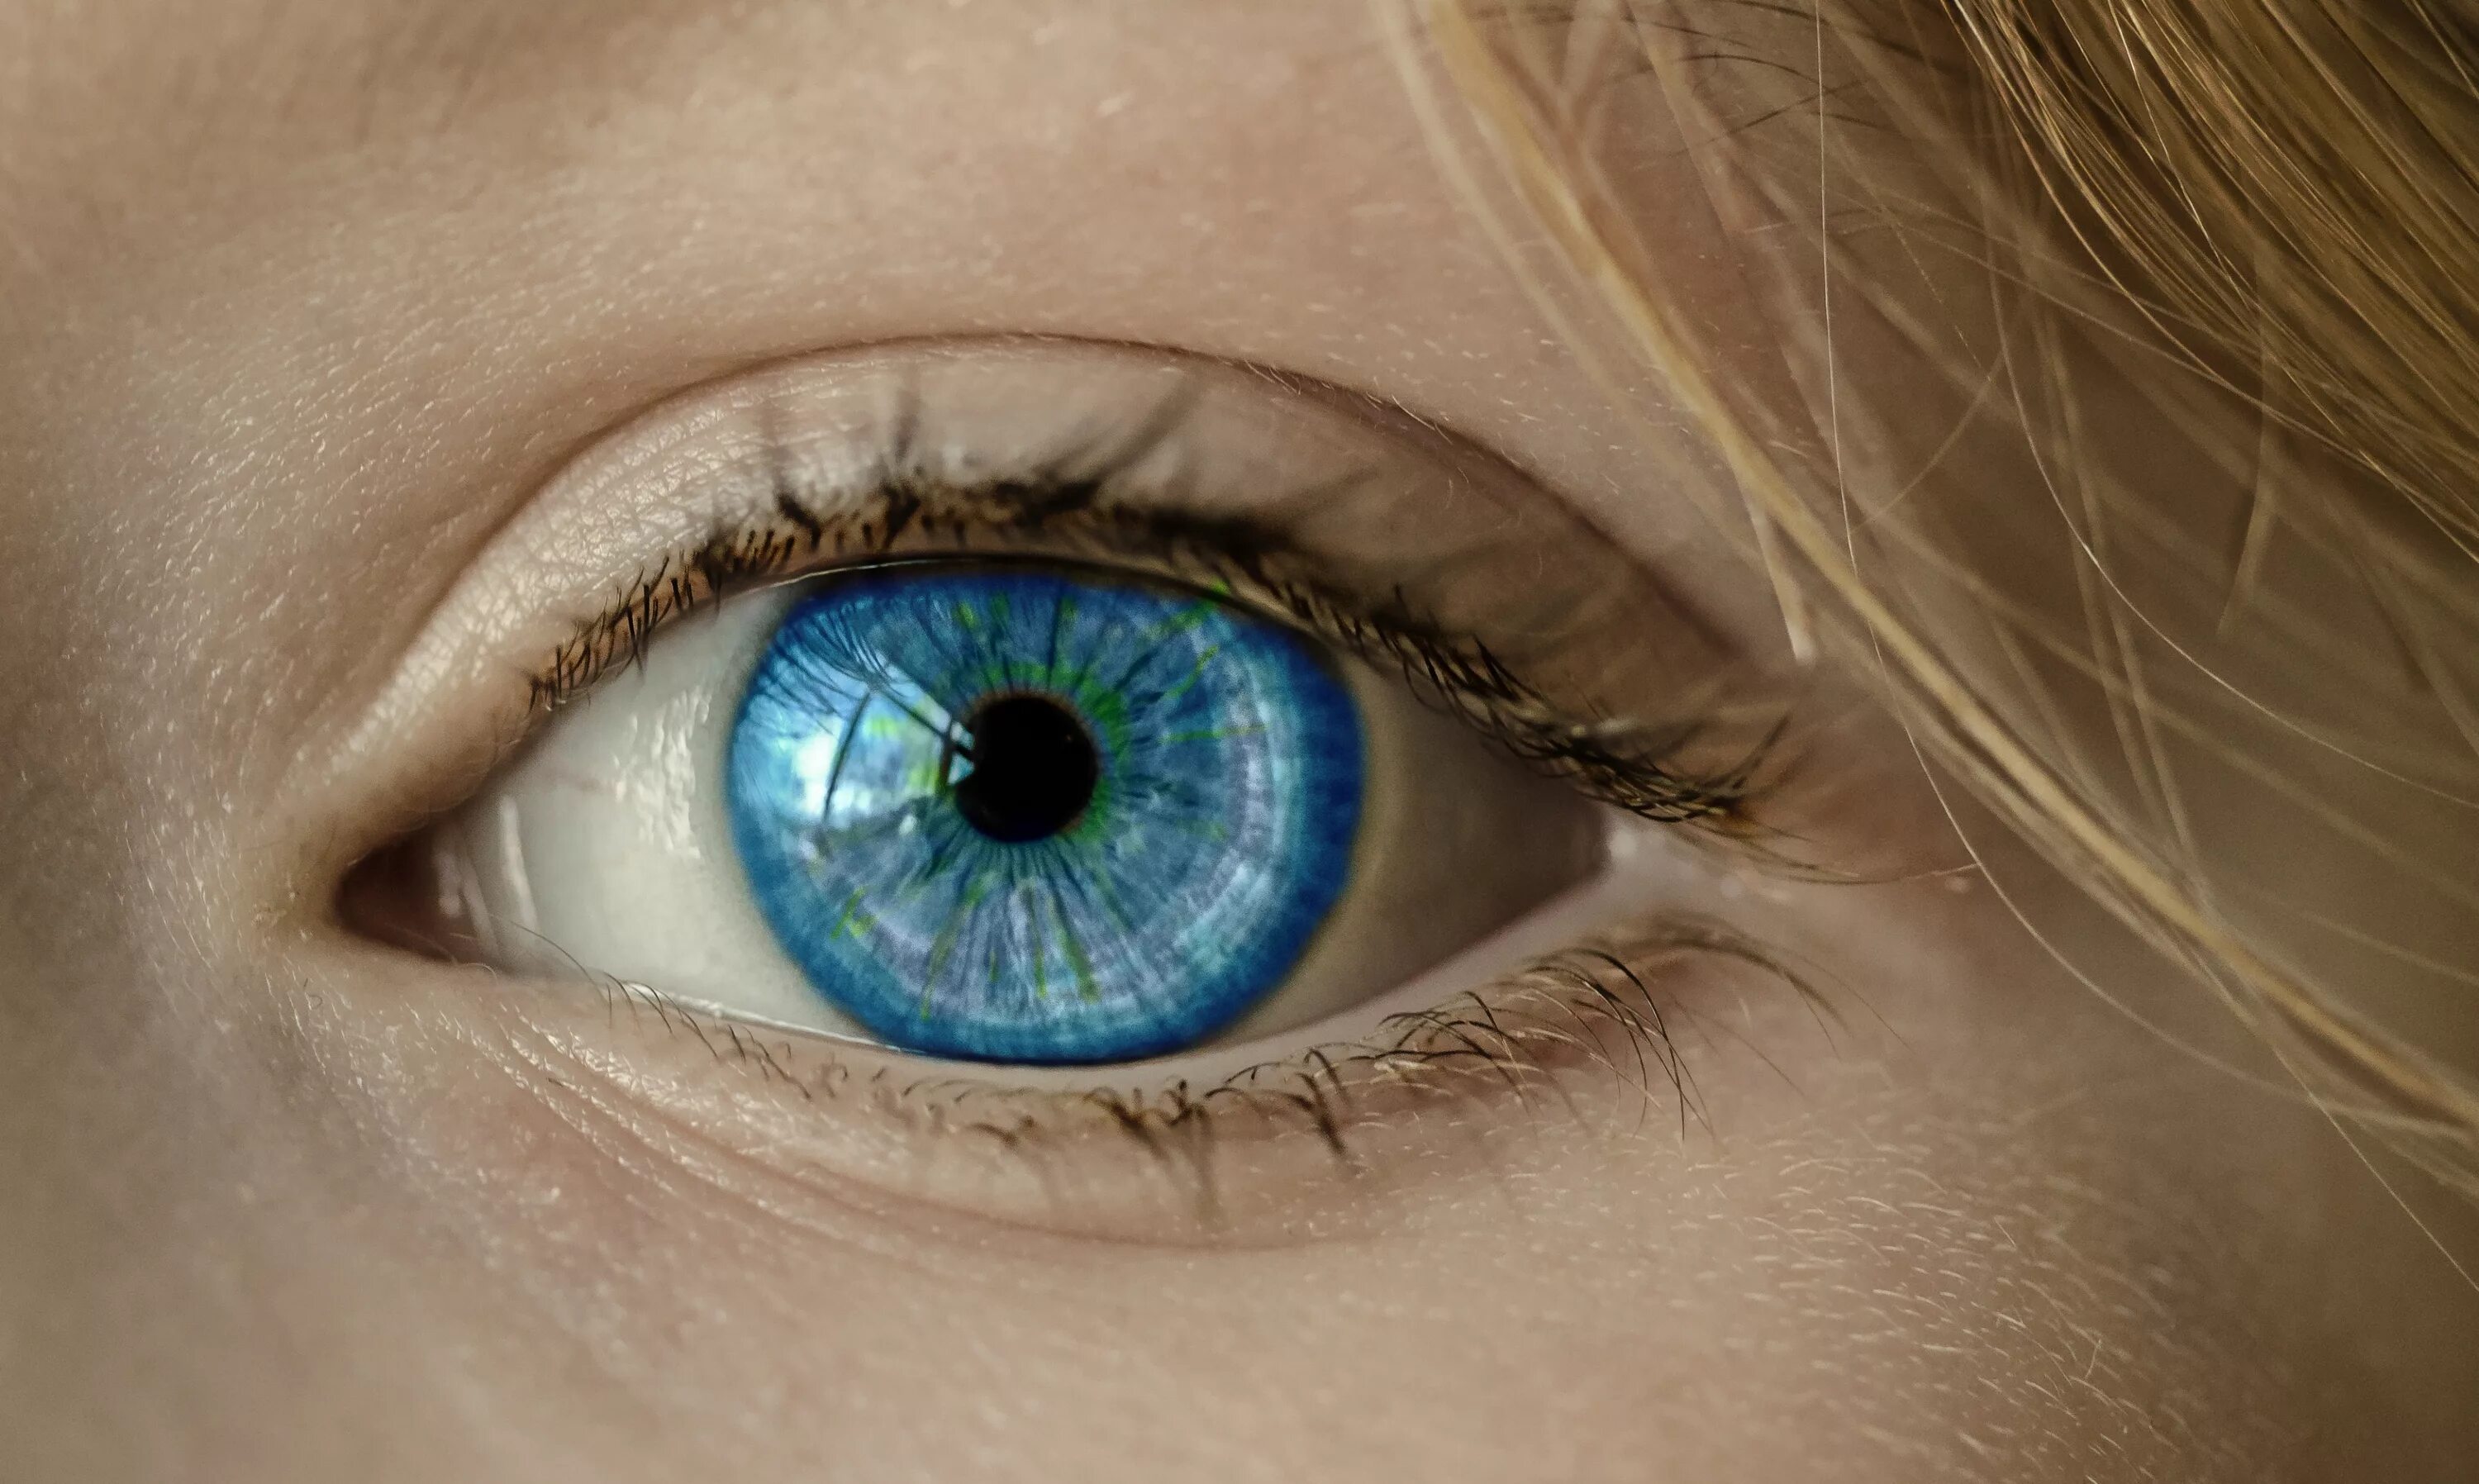 Зелено голубо желтые глаза. Болотный цвет глаз гетерохромия. Человеческий глаз. Красивые глаза. Желто зеленые глаза.